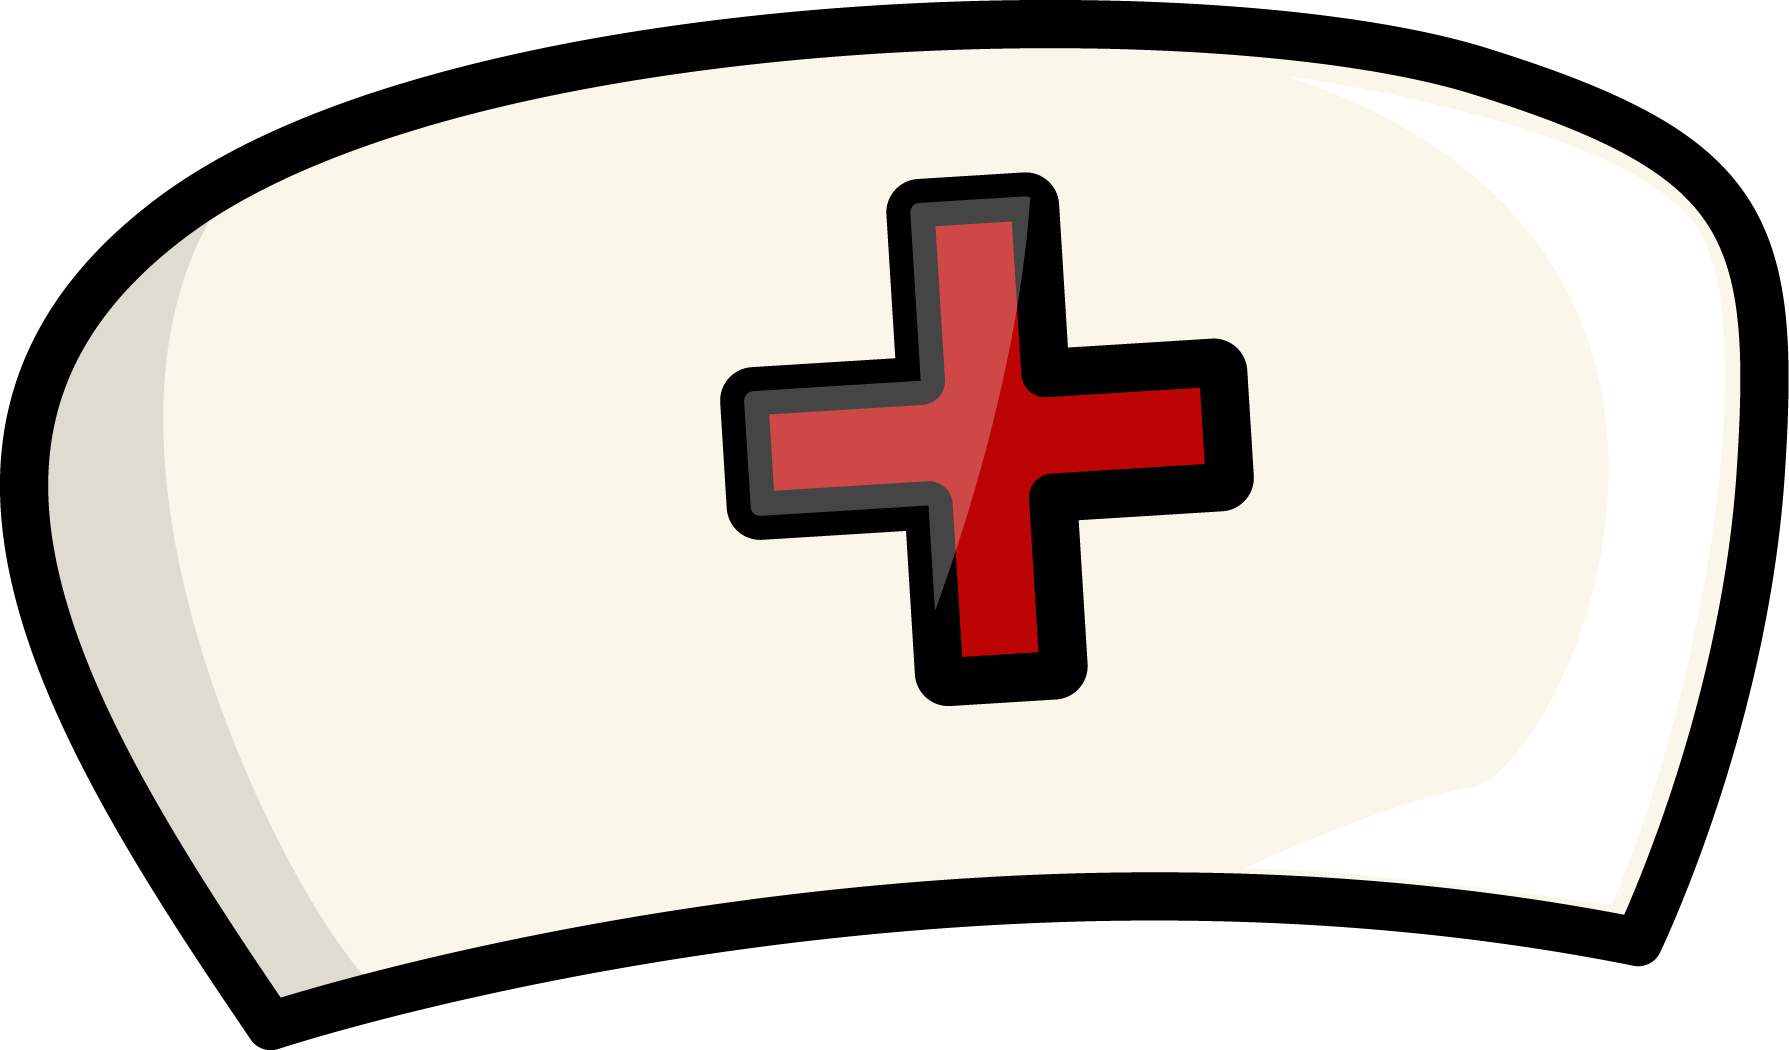 Dr hat. Медицинская шапочка с крестом. Шапочка медсестры. Медицинская шапочка с красным крестом. Медицинский колпак с крестом.